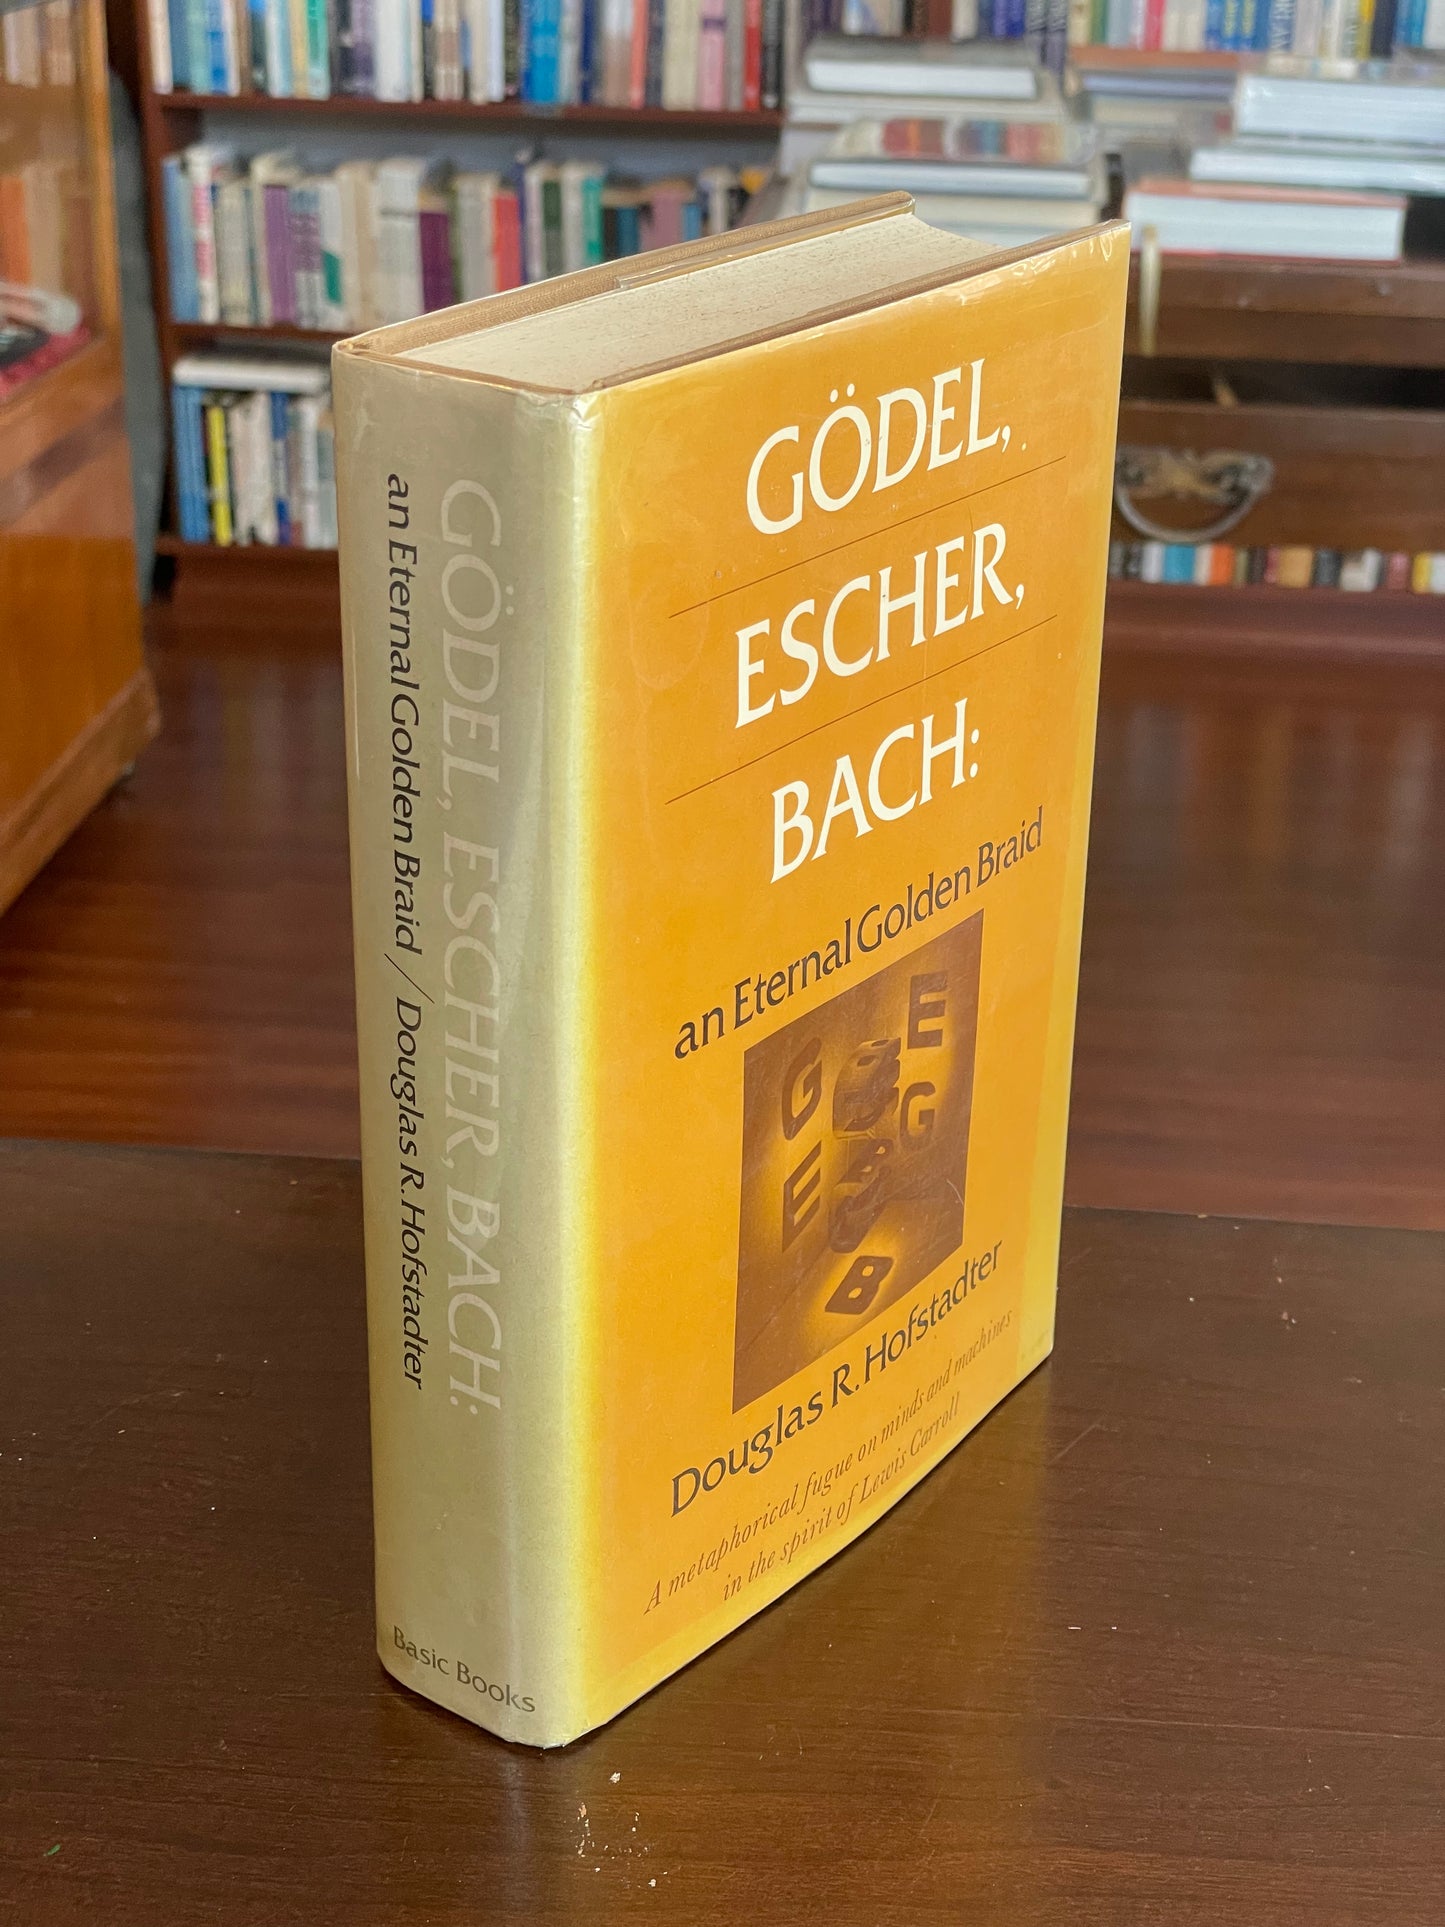 Gödel, Escher, Bach by Douglas Hofstadter (First Edition)